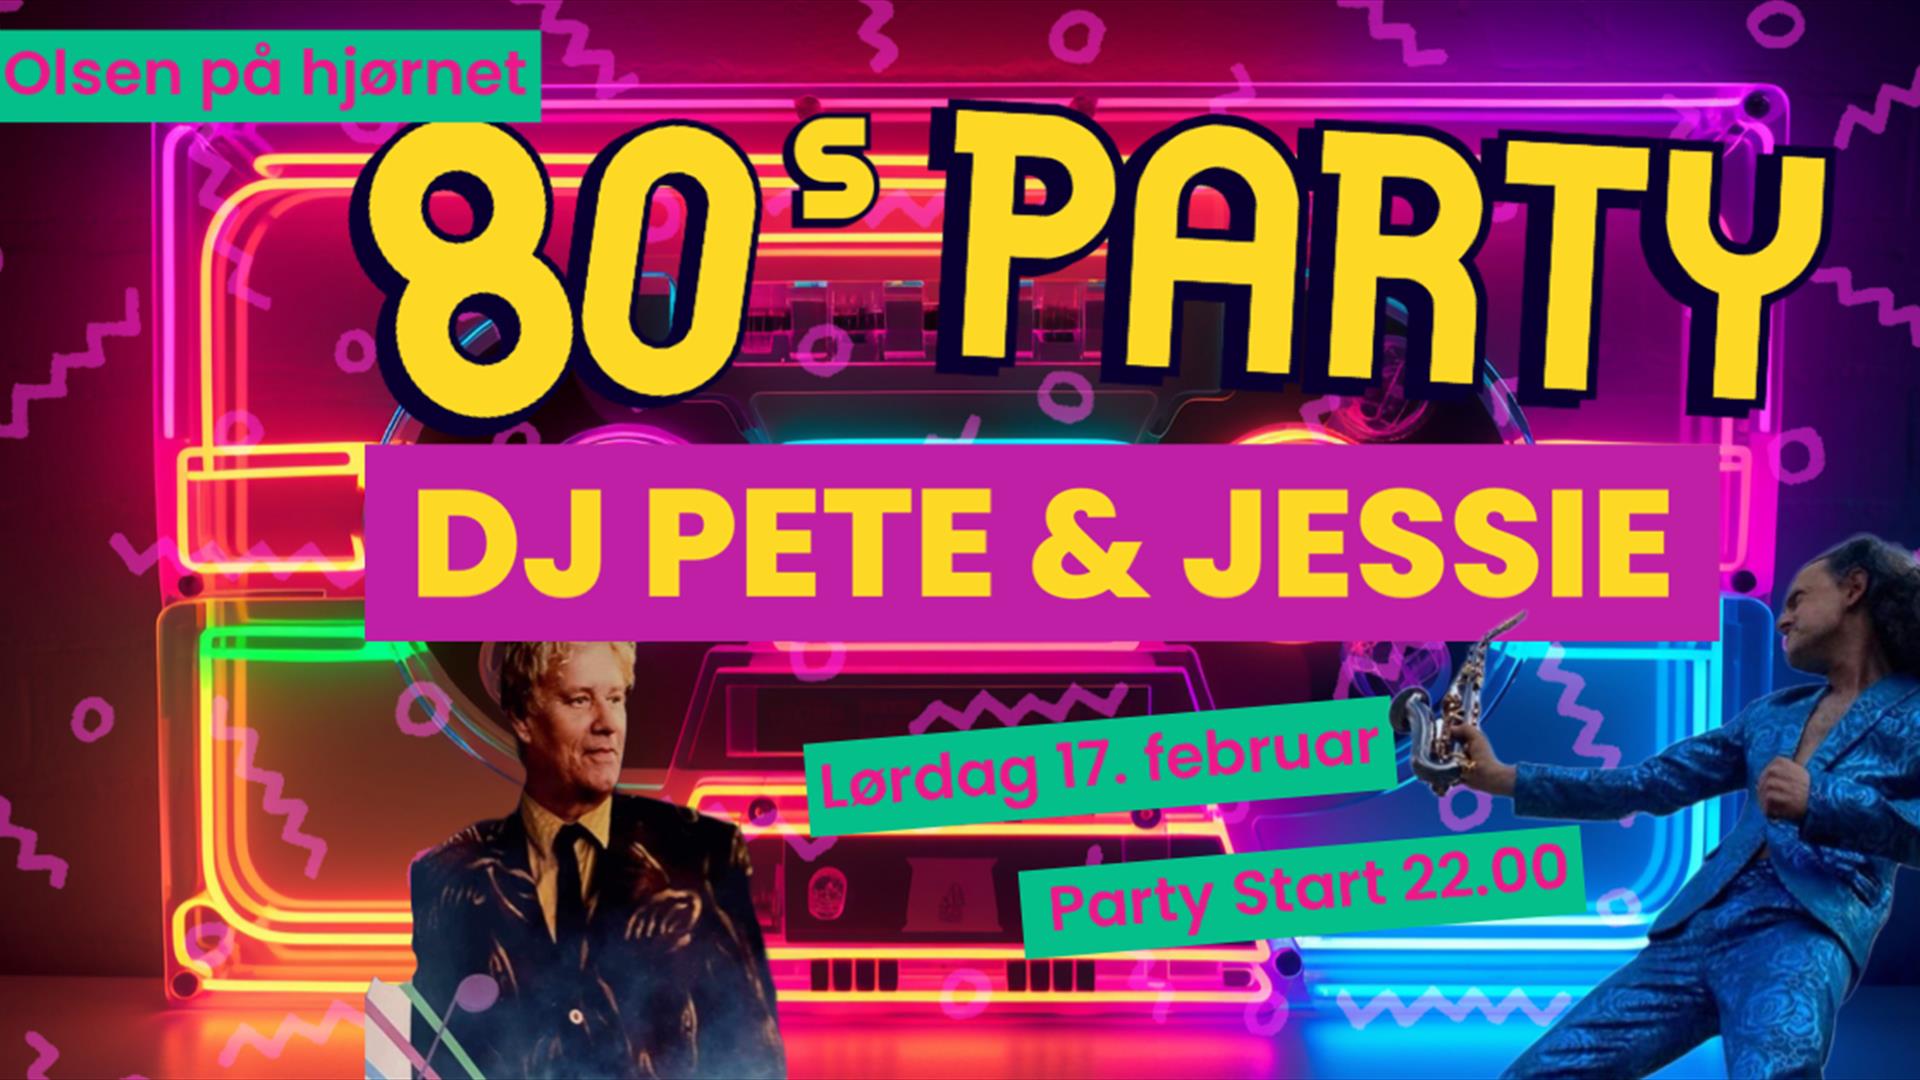 80s party med Dj Pete og Jessie